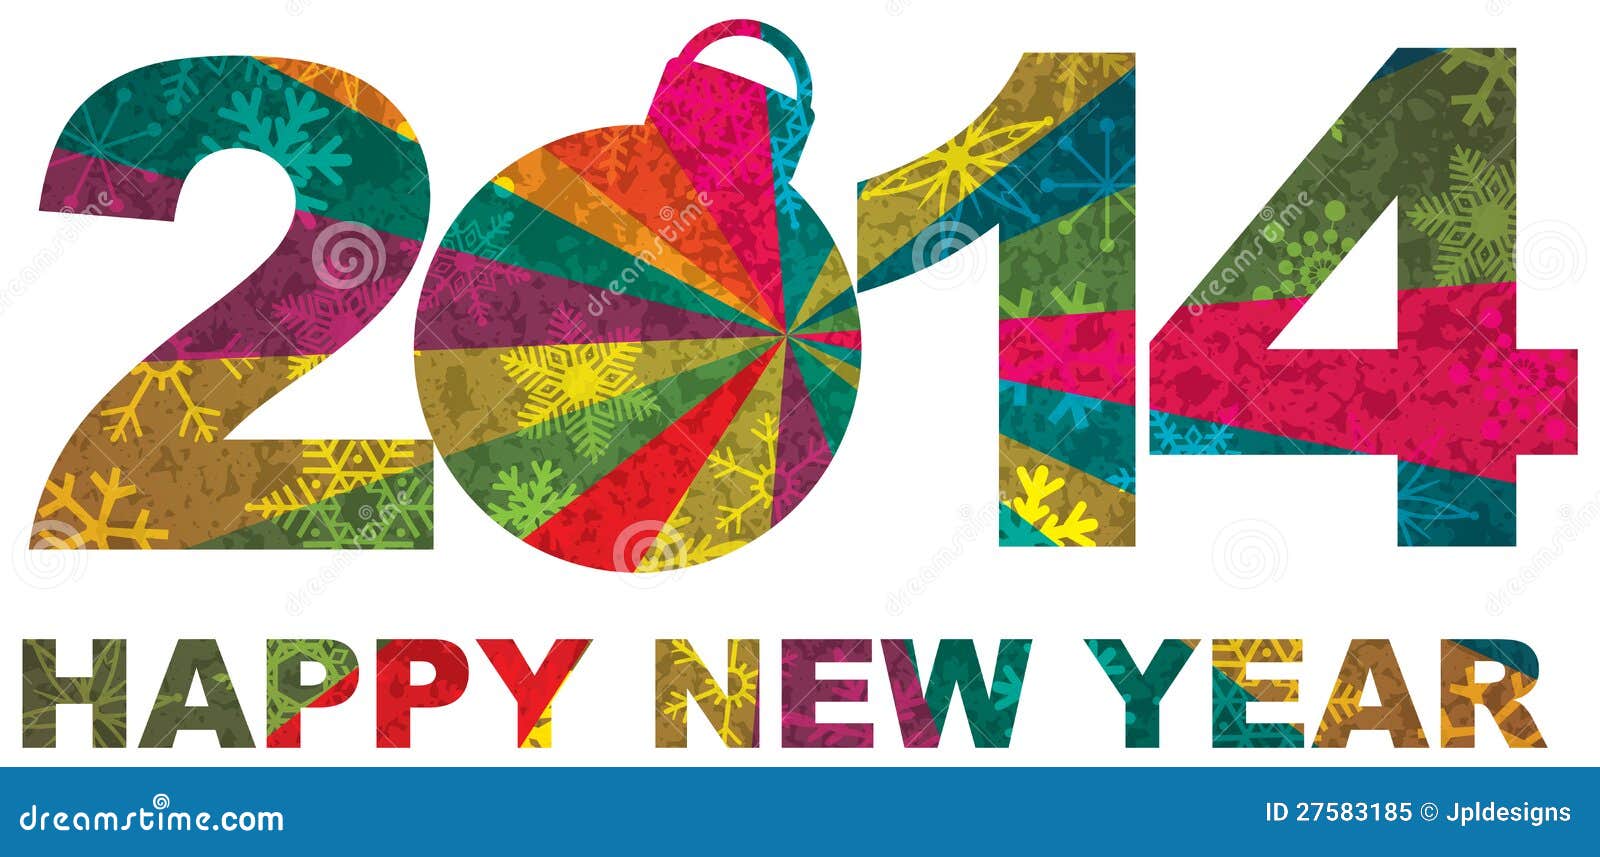 أجمل كفرات للفيس بوك بمناسبة رأس السنة ،العام الجديد 2014 happy new year 17